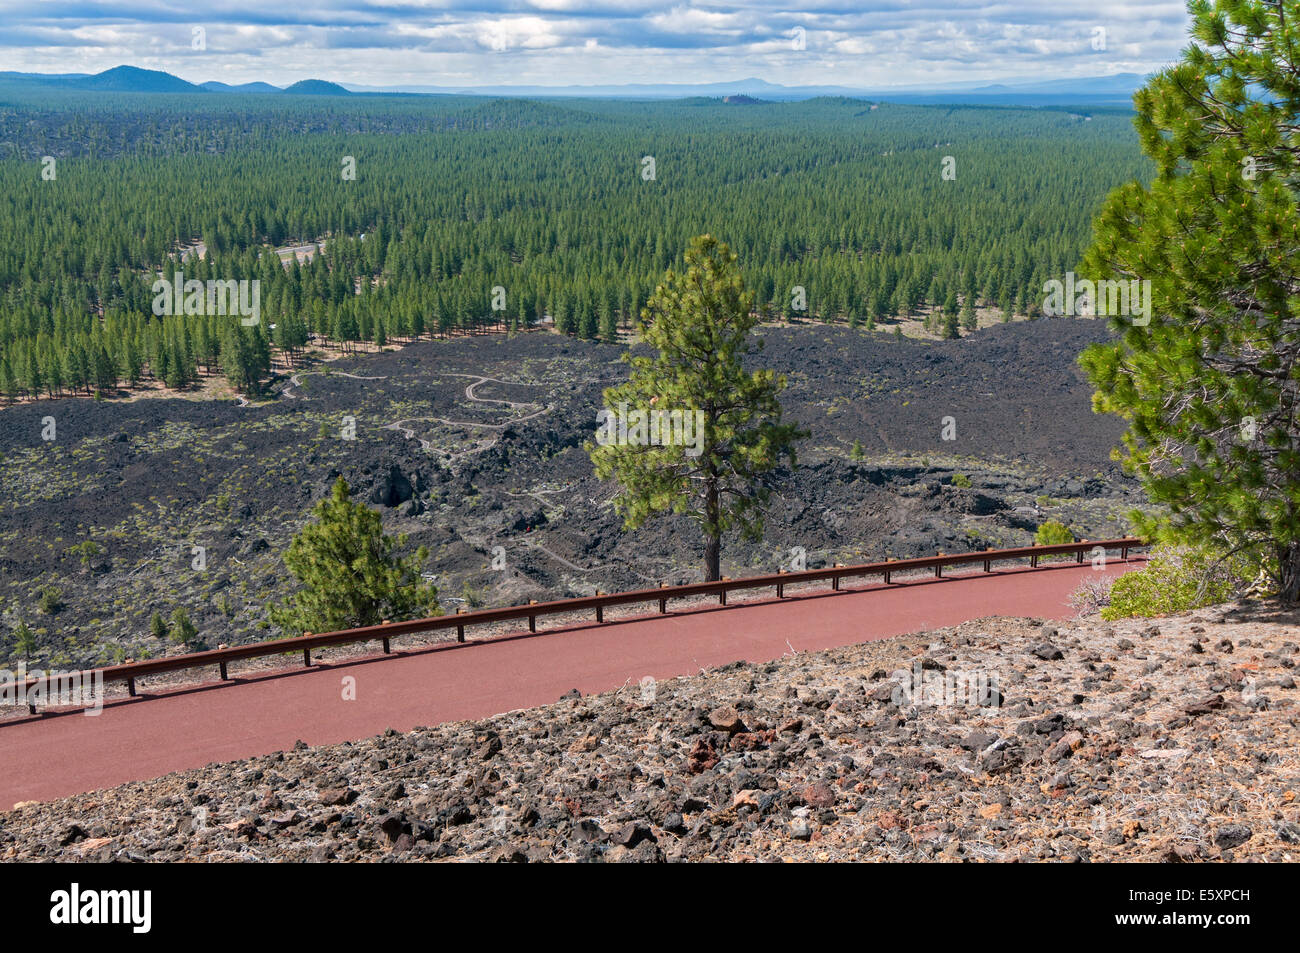 Oregon, Monumento Nacional Volcánico Newberry, Lava Butte, Summit Road, campo de lava vista desde el borde del cráter trail Foto de stock